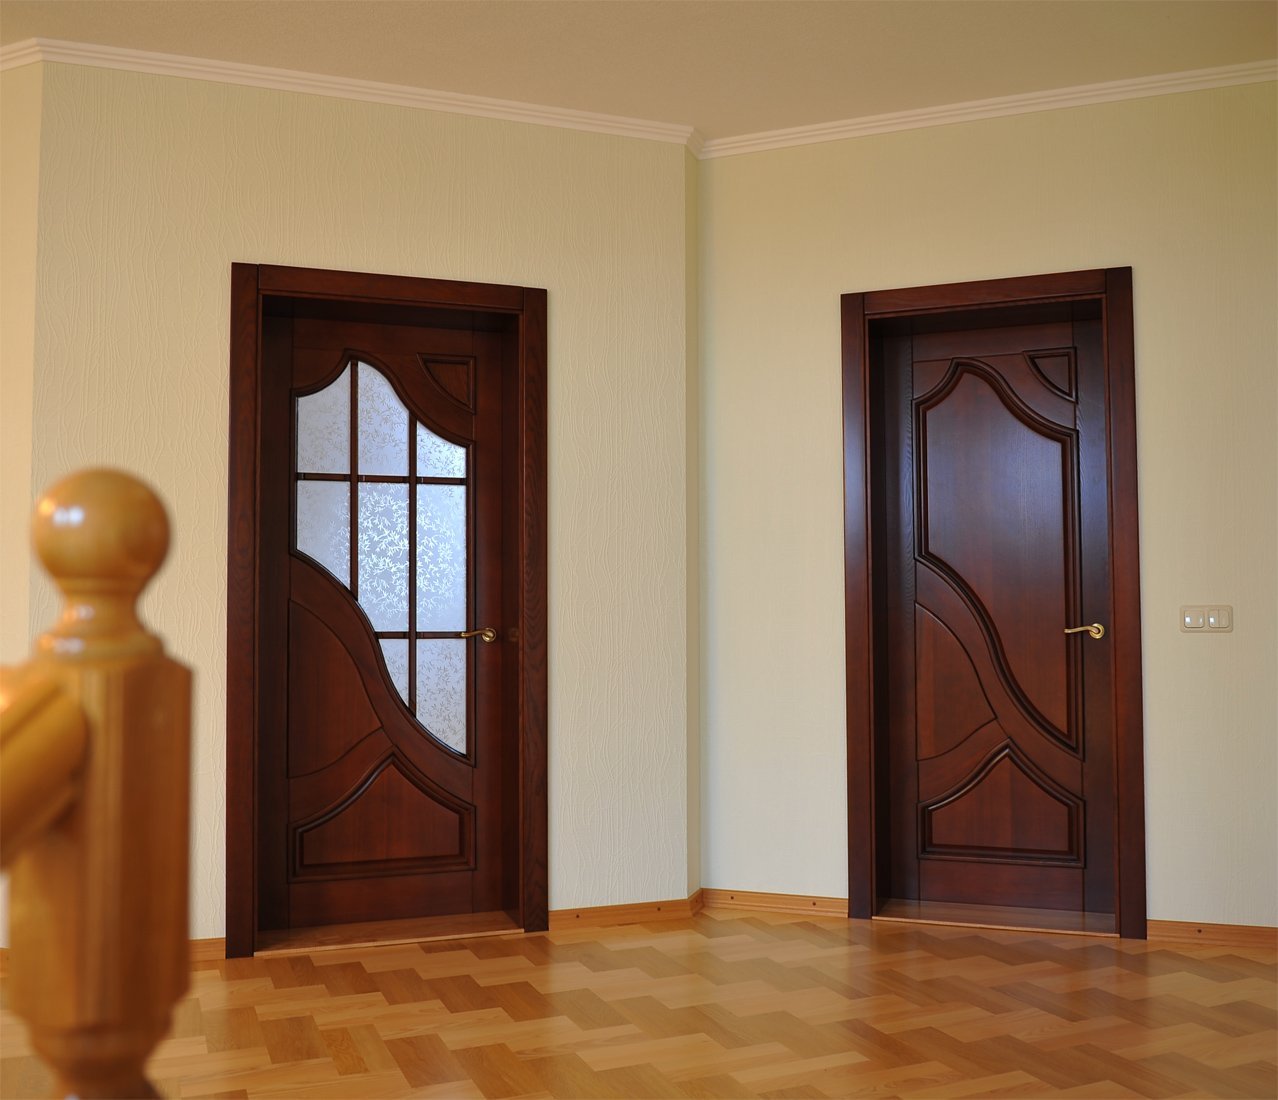 Дешевые двери в квартиру. Двери в интерьере. Межкомнатные двери. Деревянные двери межкомнатные. Красивые деревянные двери.